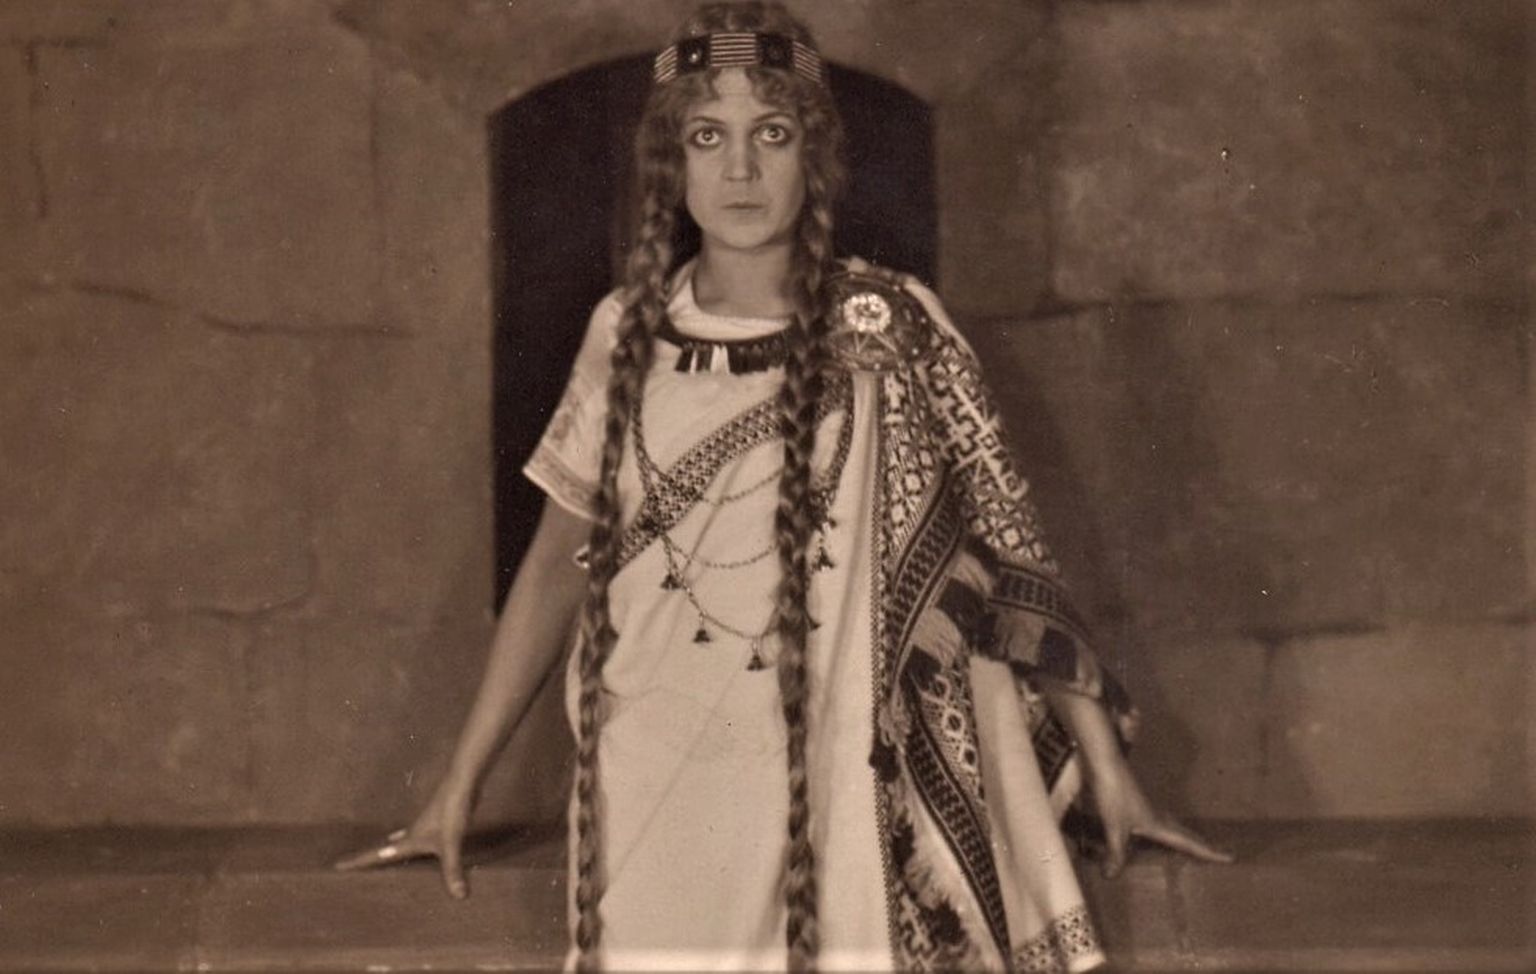 Lilita Bērziņa - Laimdota Aleksandra Rusteiķa filmā "Lāčplēsis" (1930)